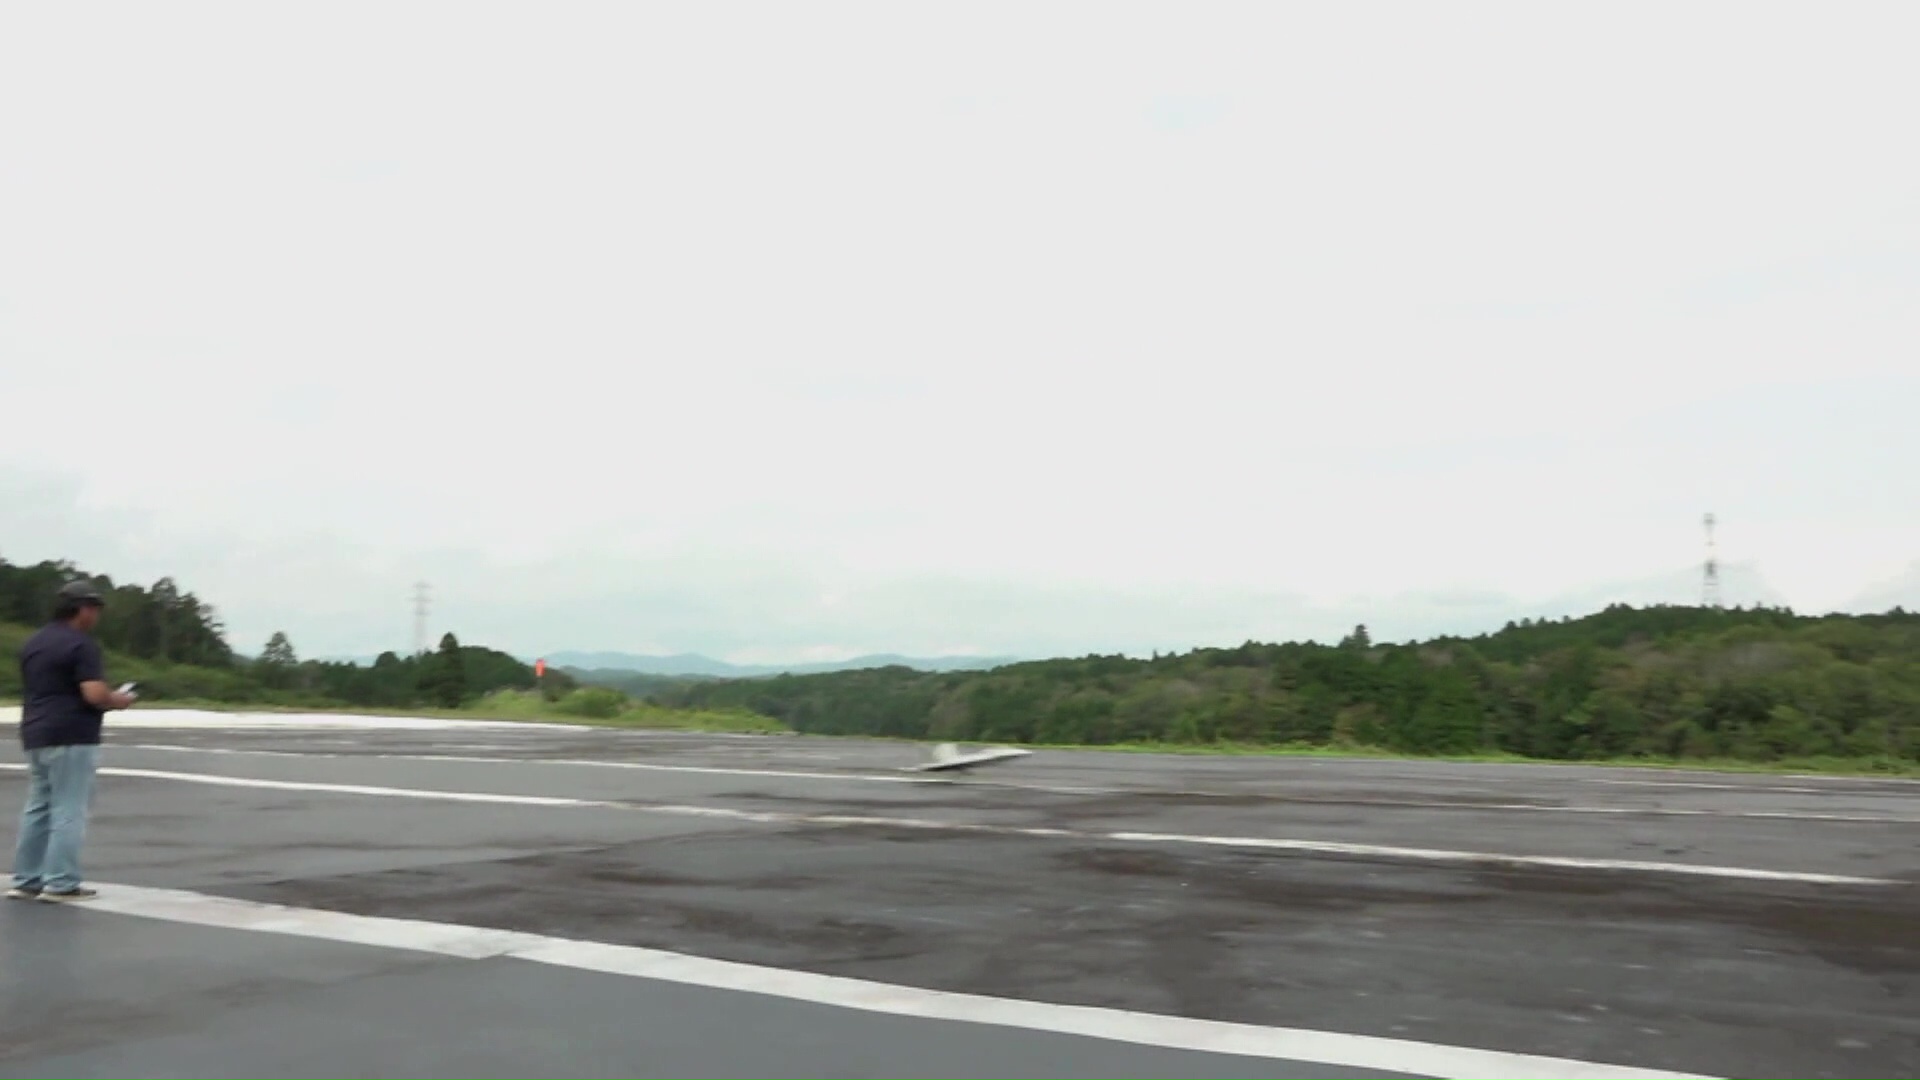 ラジコン飛行機が滑走路に着陸する様子を遠くから撮影した写真